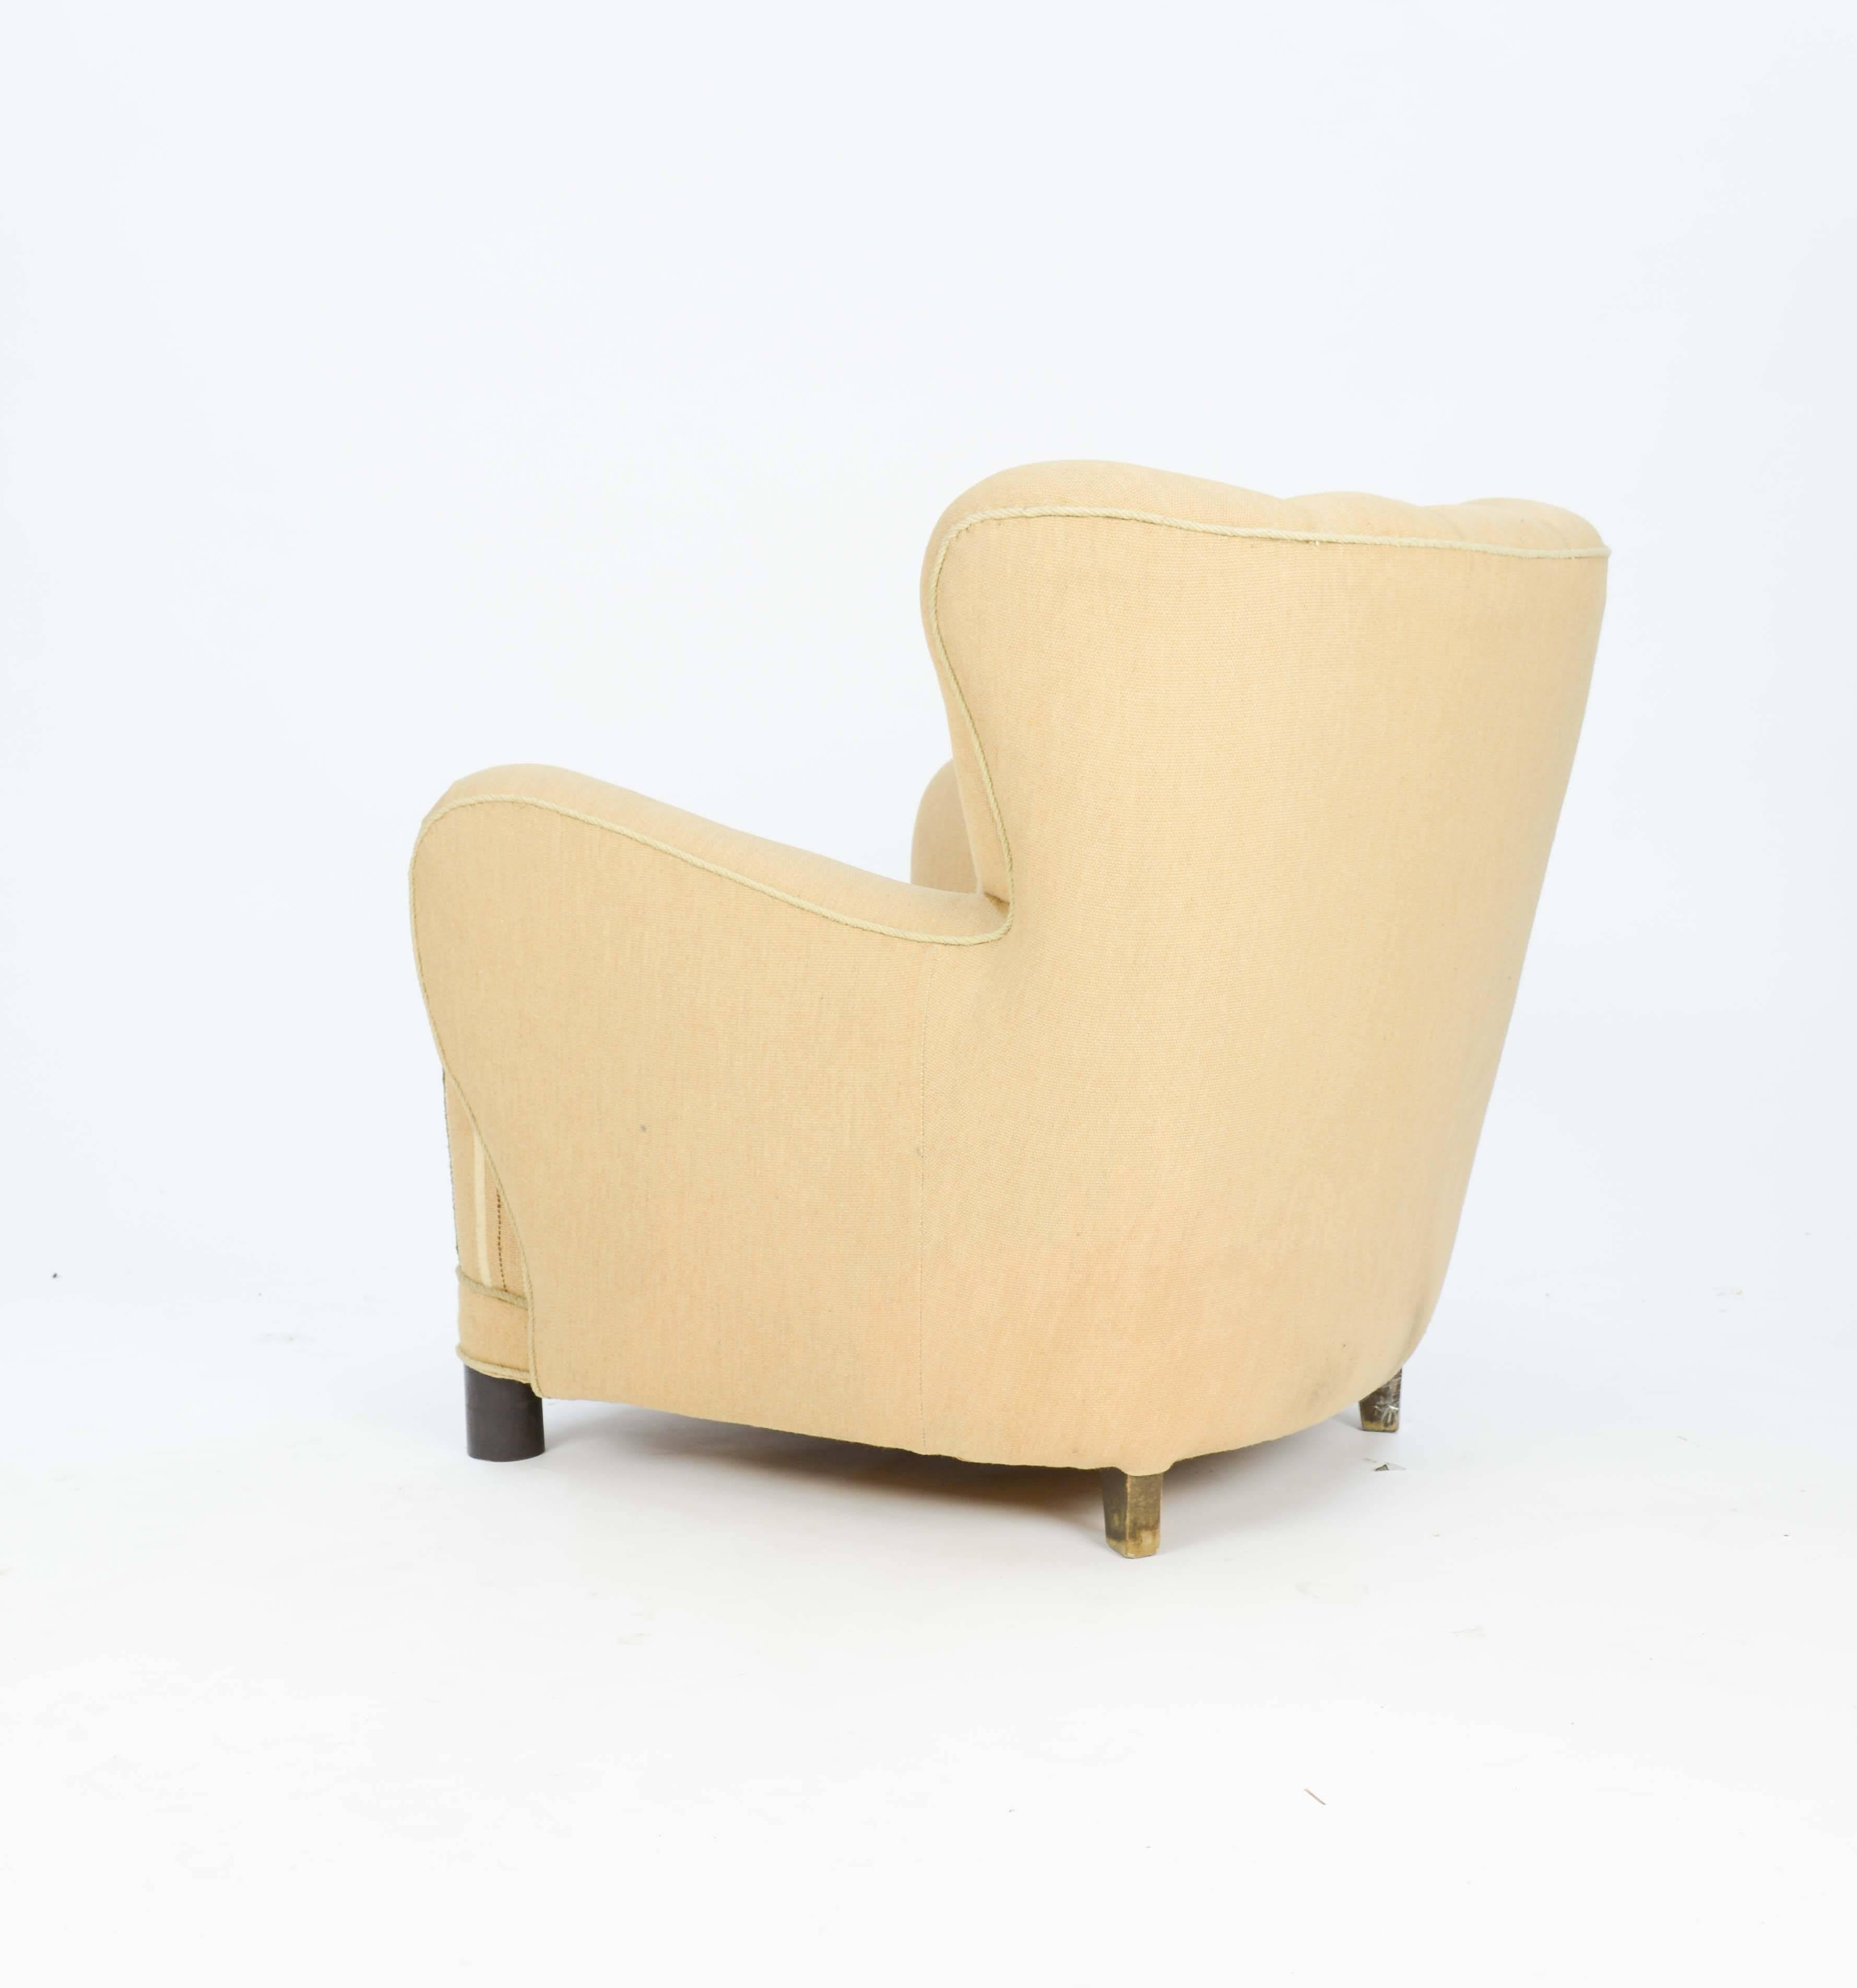 Scandinavian Modern 1940s, Danish Club Chair by Flemming Lassen in Burlap